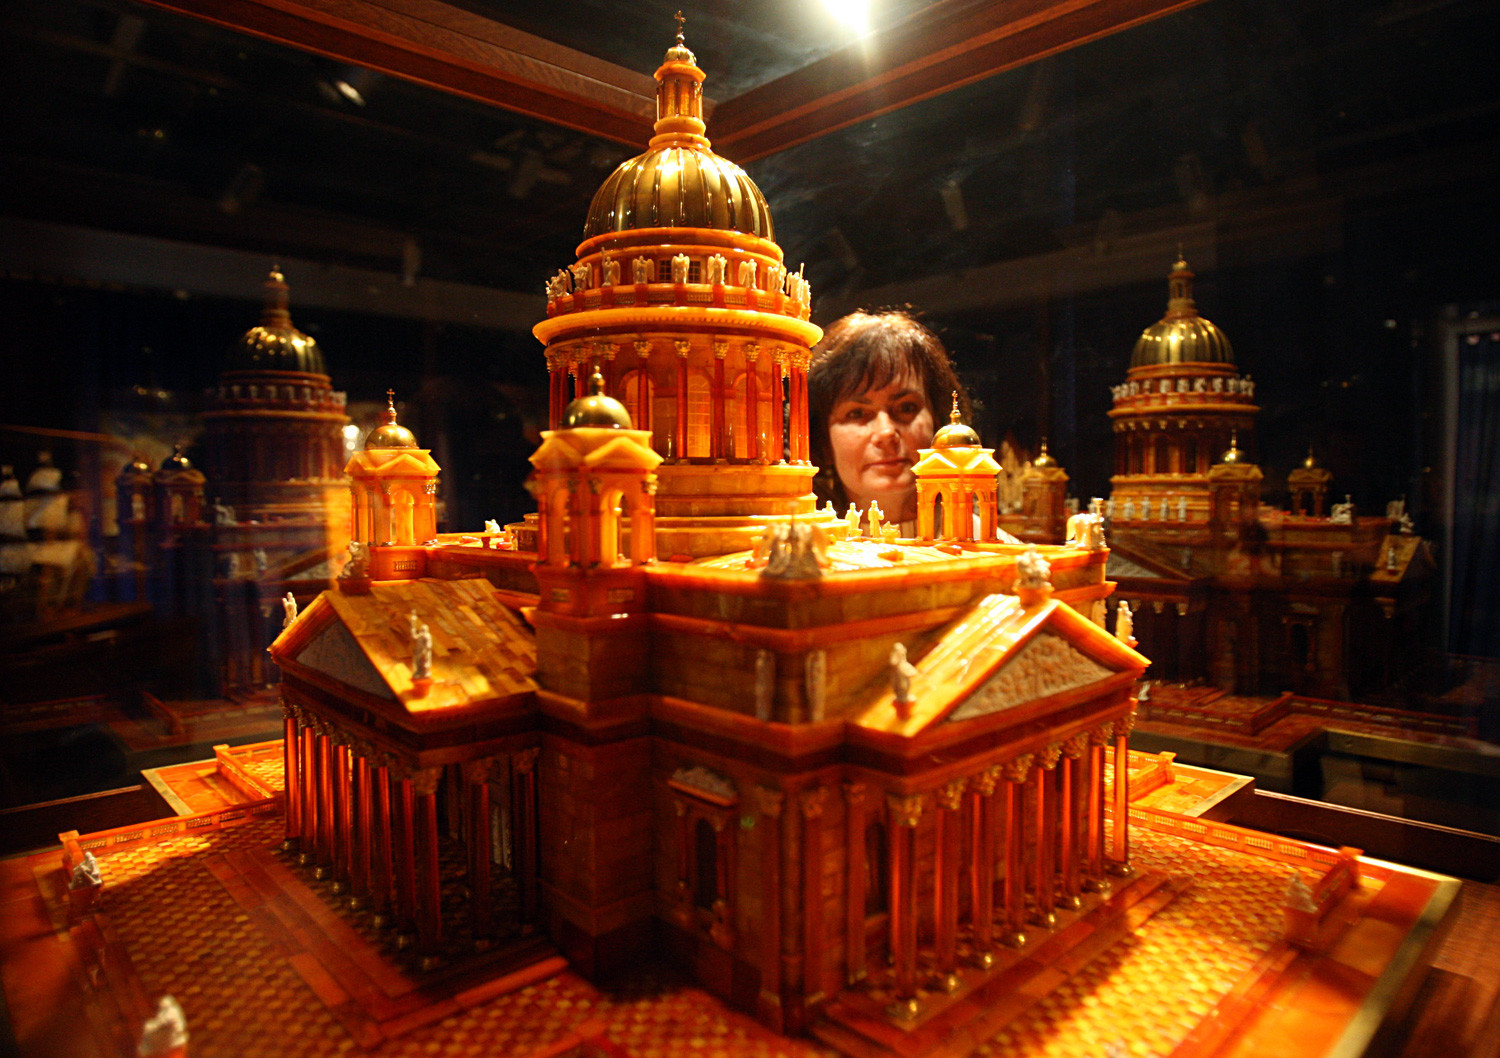 聖イサアク寺院の琥珀縮小模型